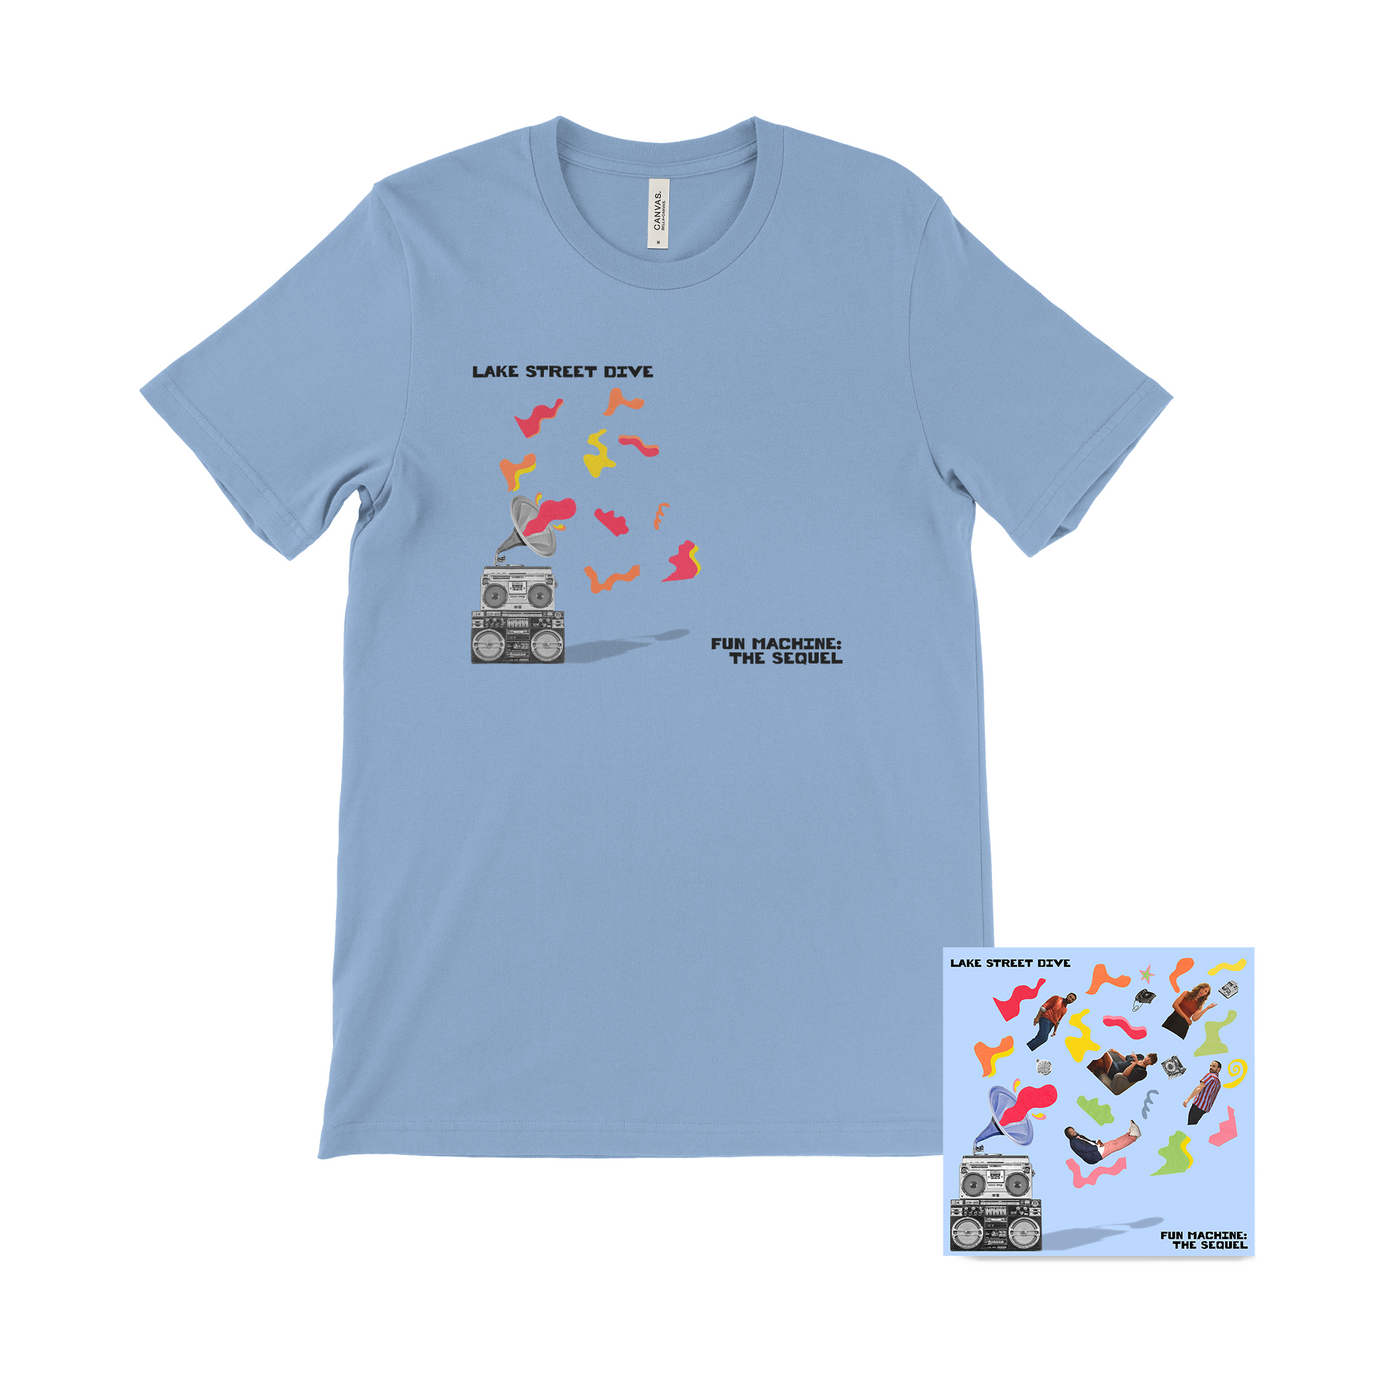 Fun Machine: The Sequel Digital EP + T-shirt